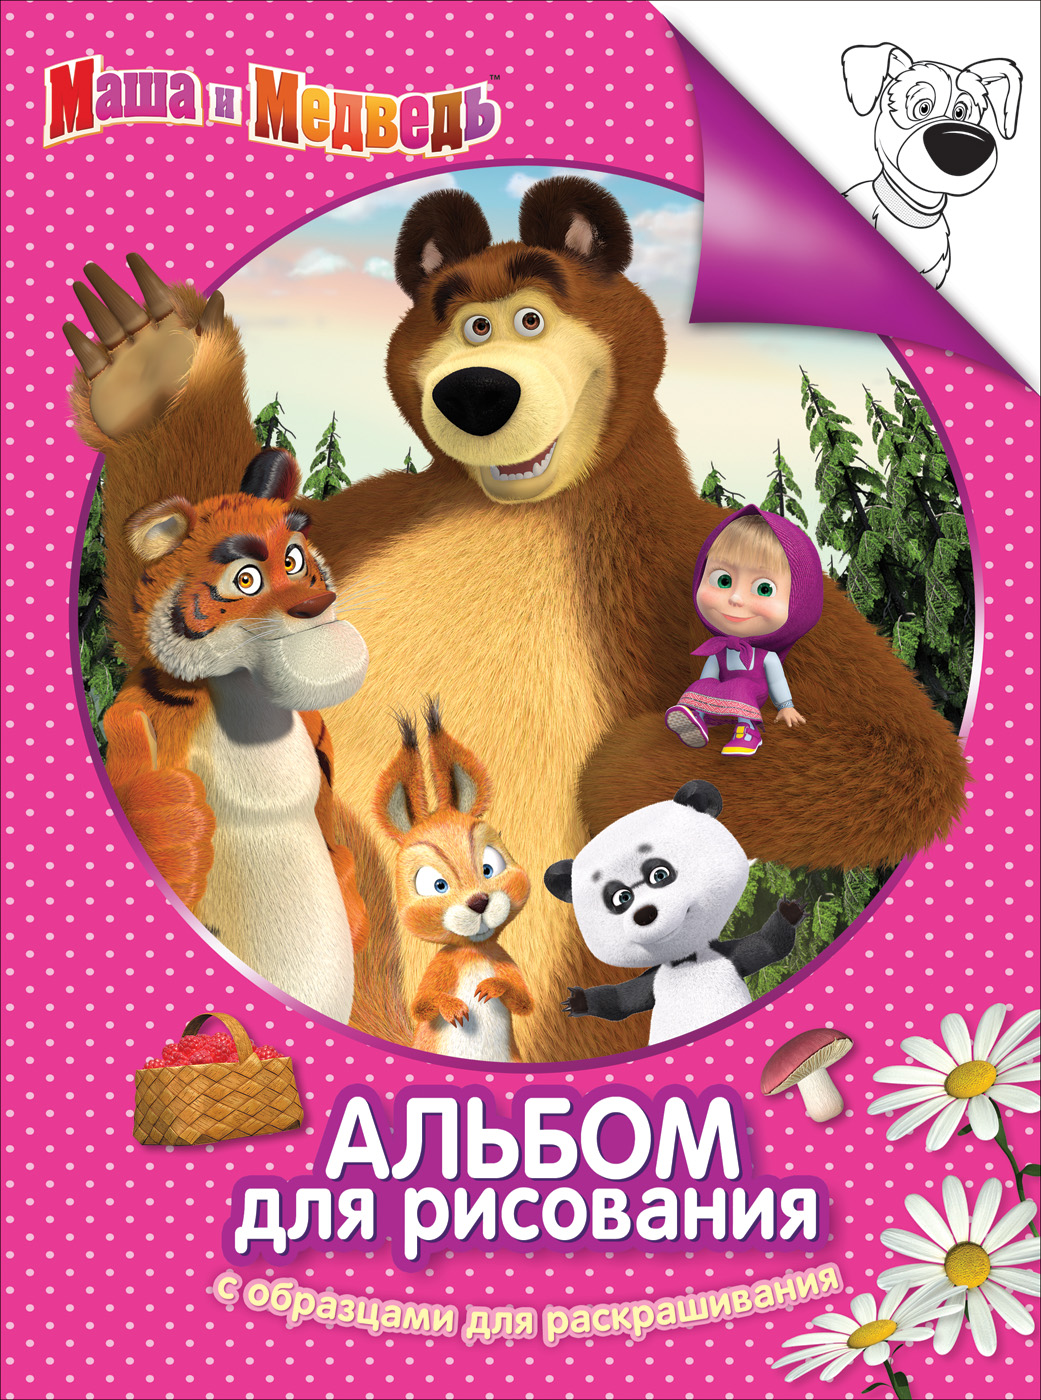 Альбом-раскраска 30915 Маша и Медведь розов Росмэн - Альметьевск 